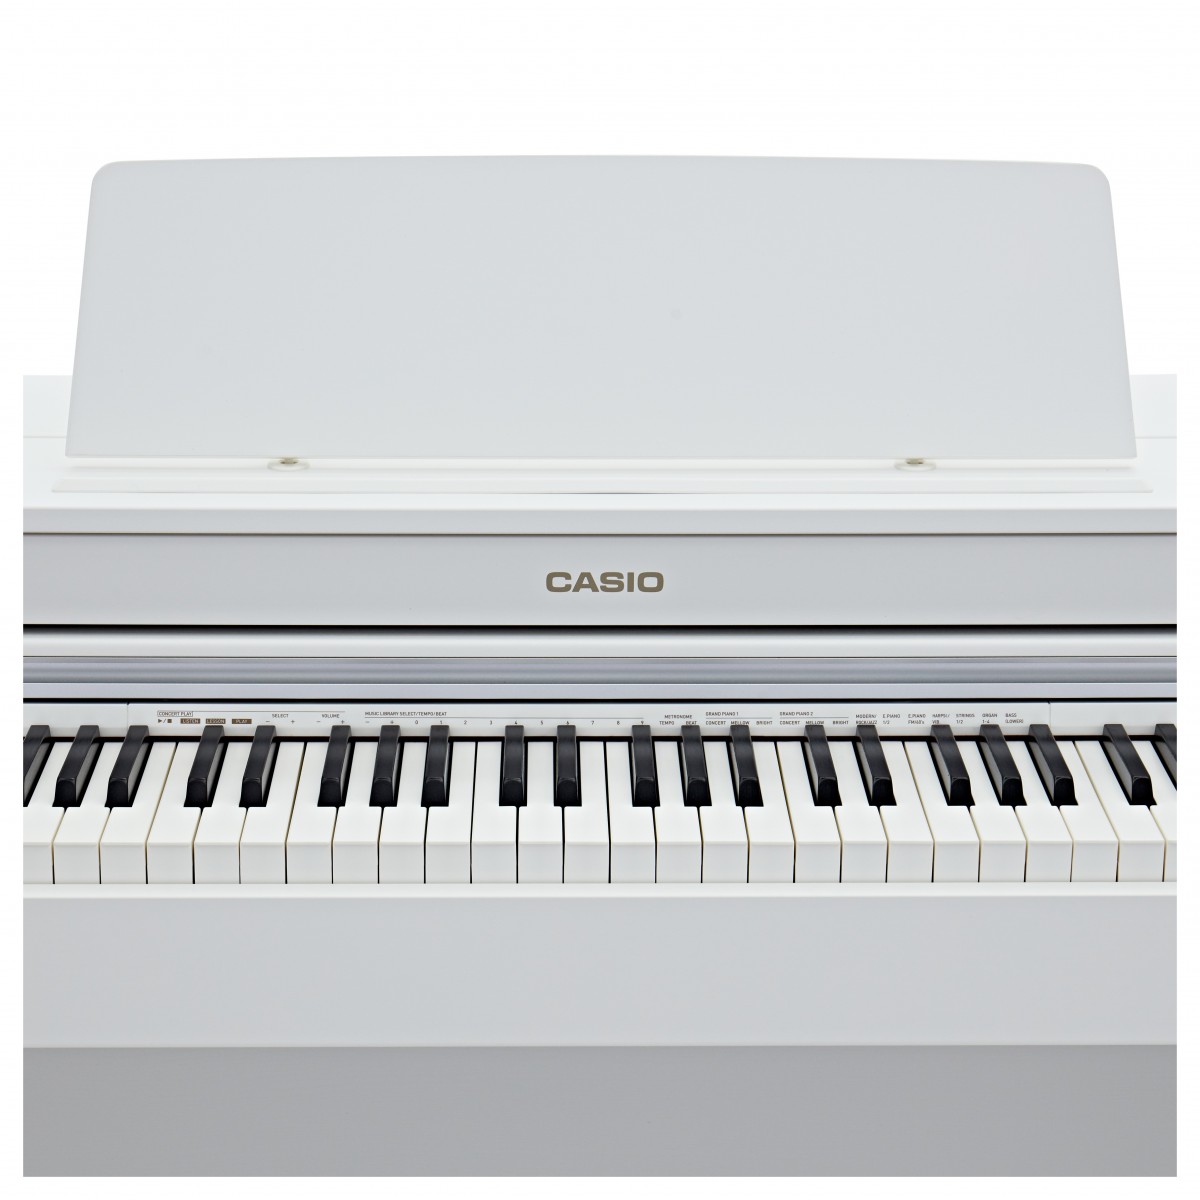 CASIO CELVIANO AP470 WE WHITE PIANOFORTE DIGITALE 88 TASTI COLORE BIANCO 4